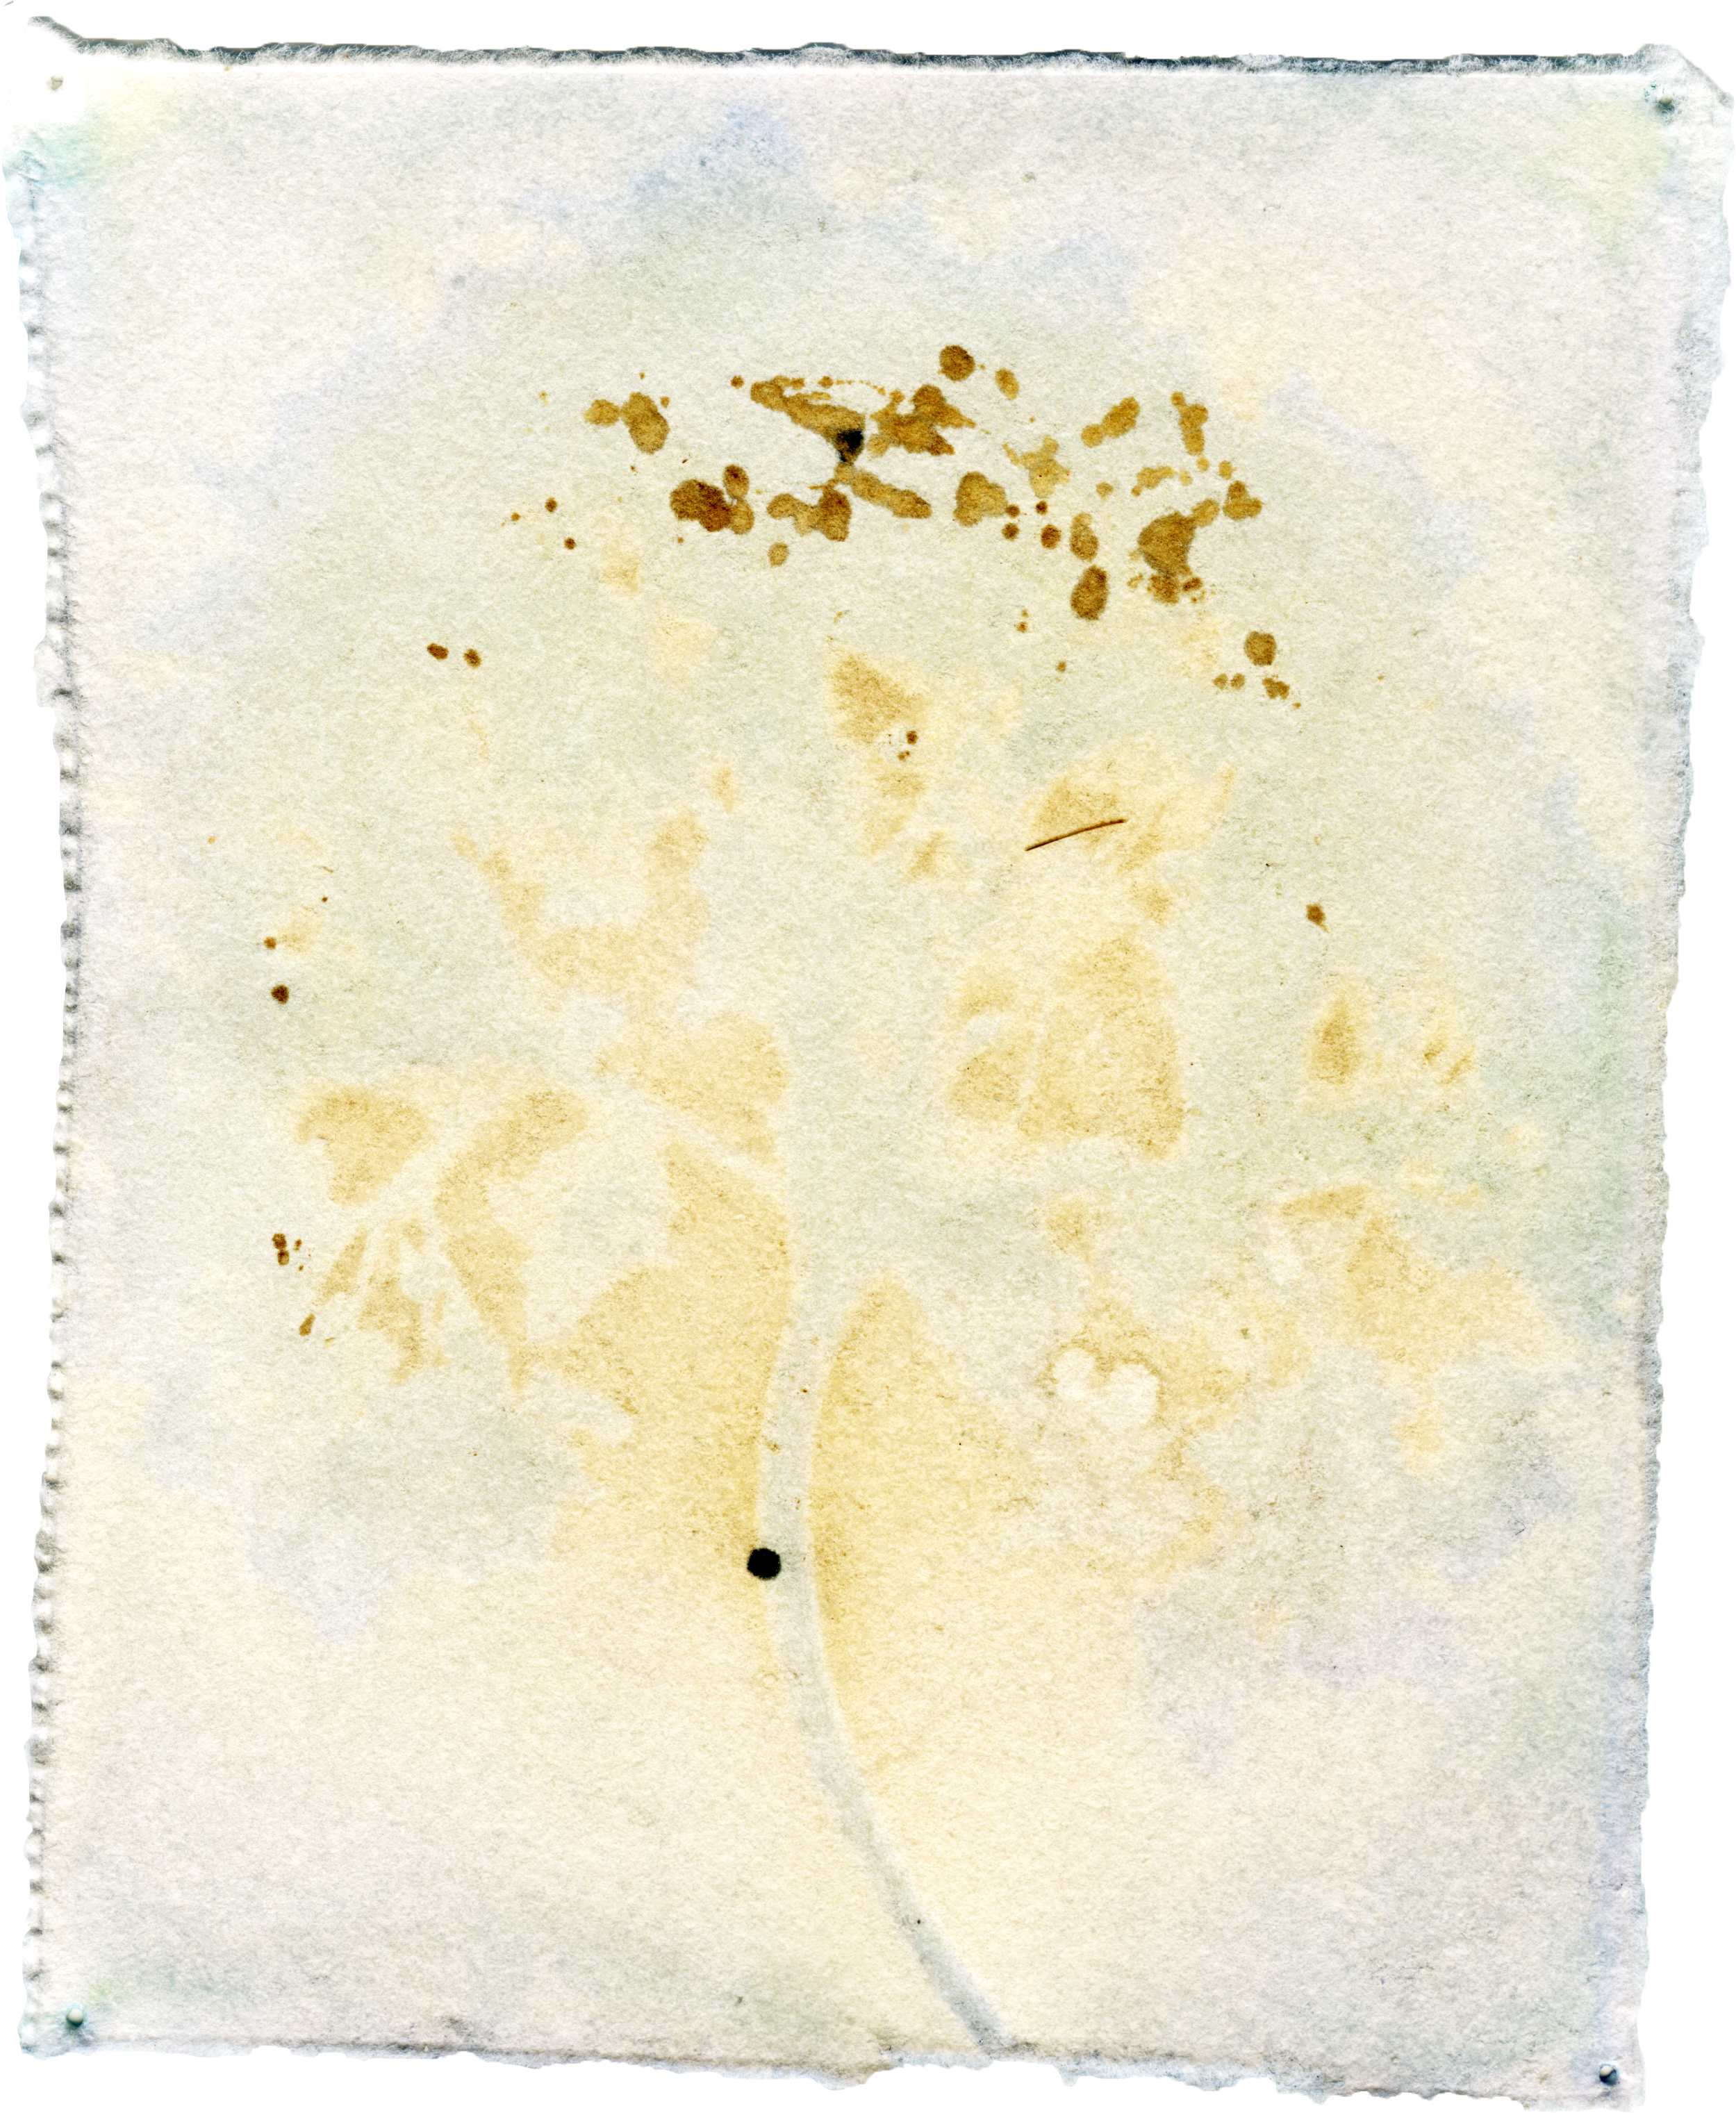 Hydrangea Macrophylla with Hydrangea Macrophylla Emulsion, 5" x 4", 2018